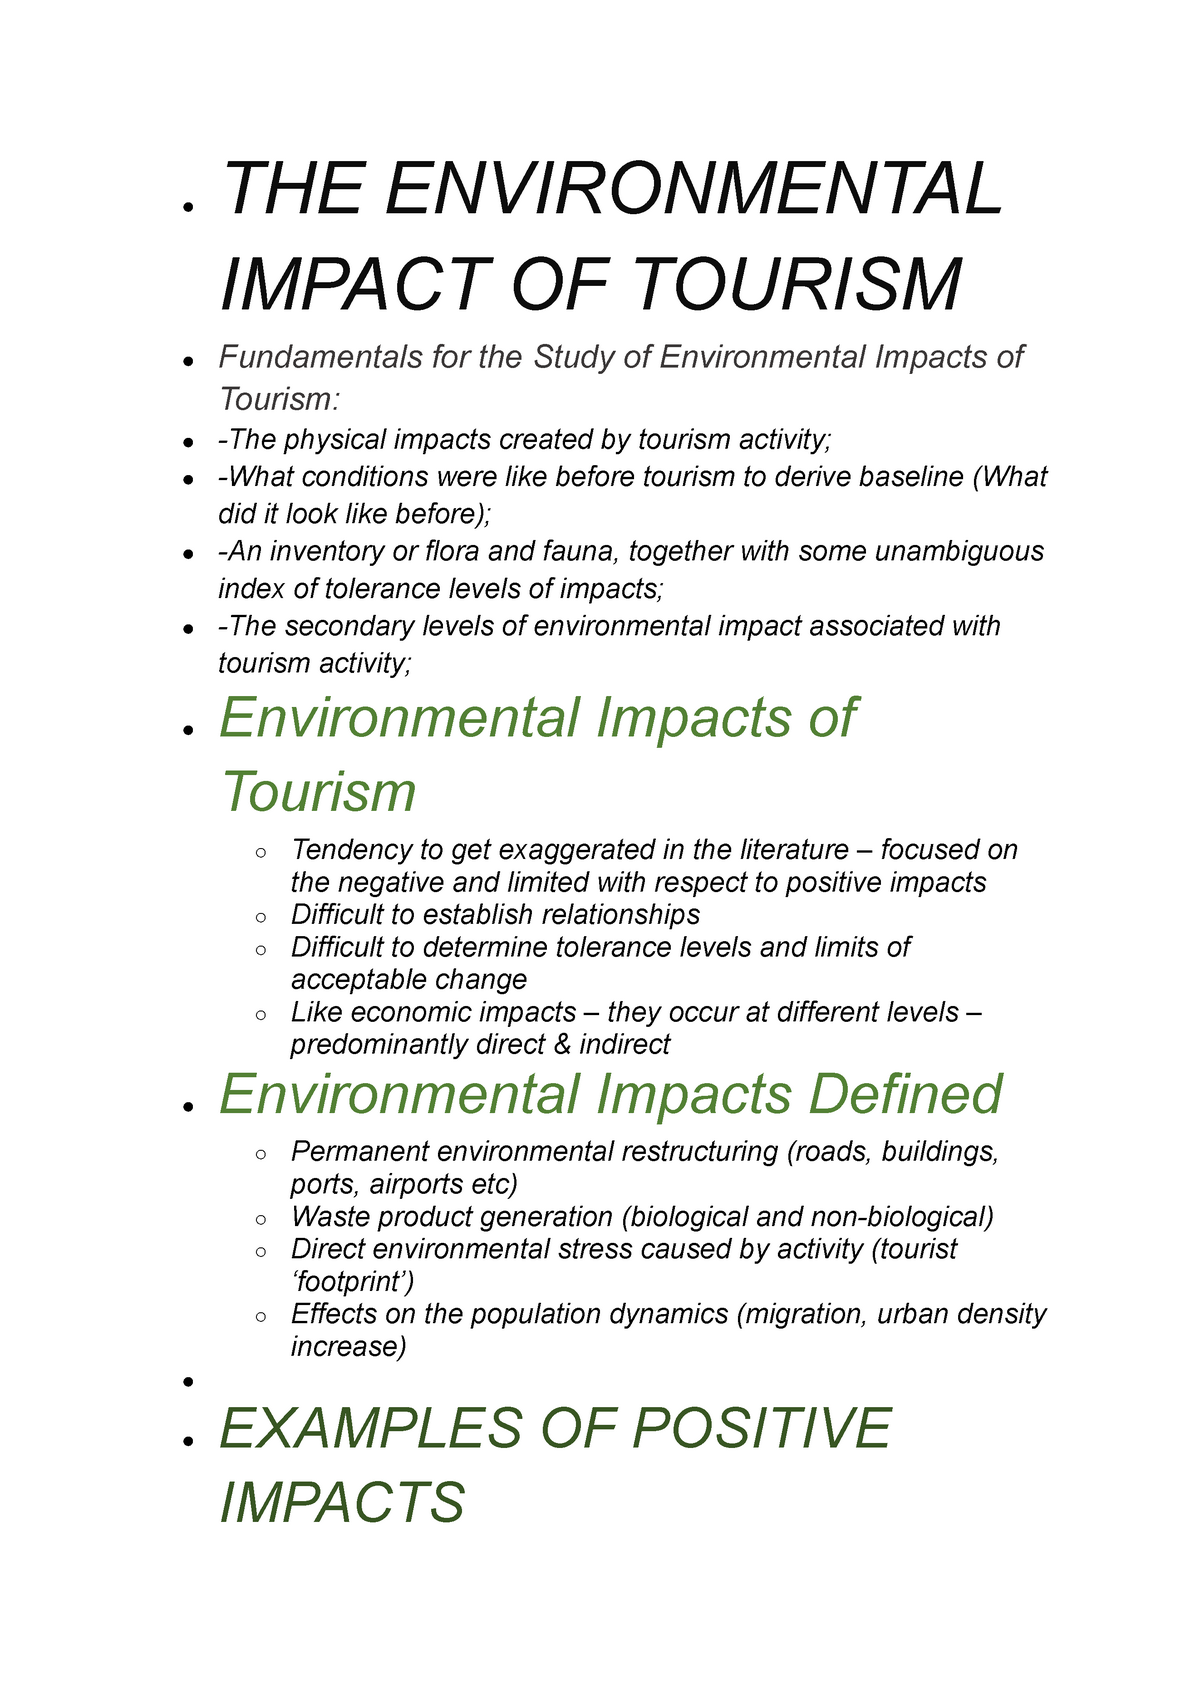 tourism impacts case study